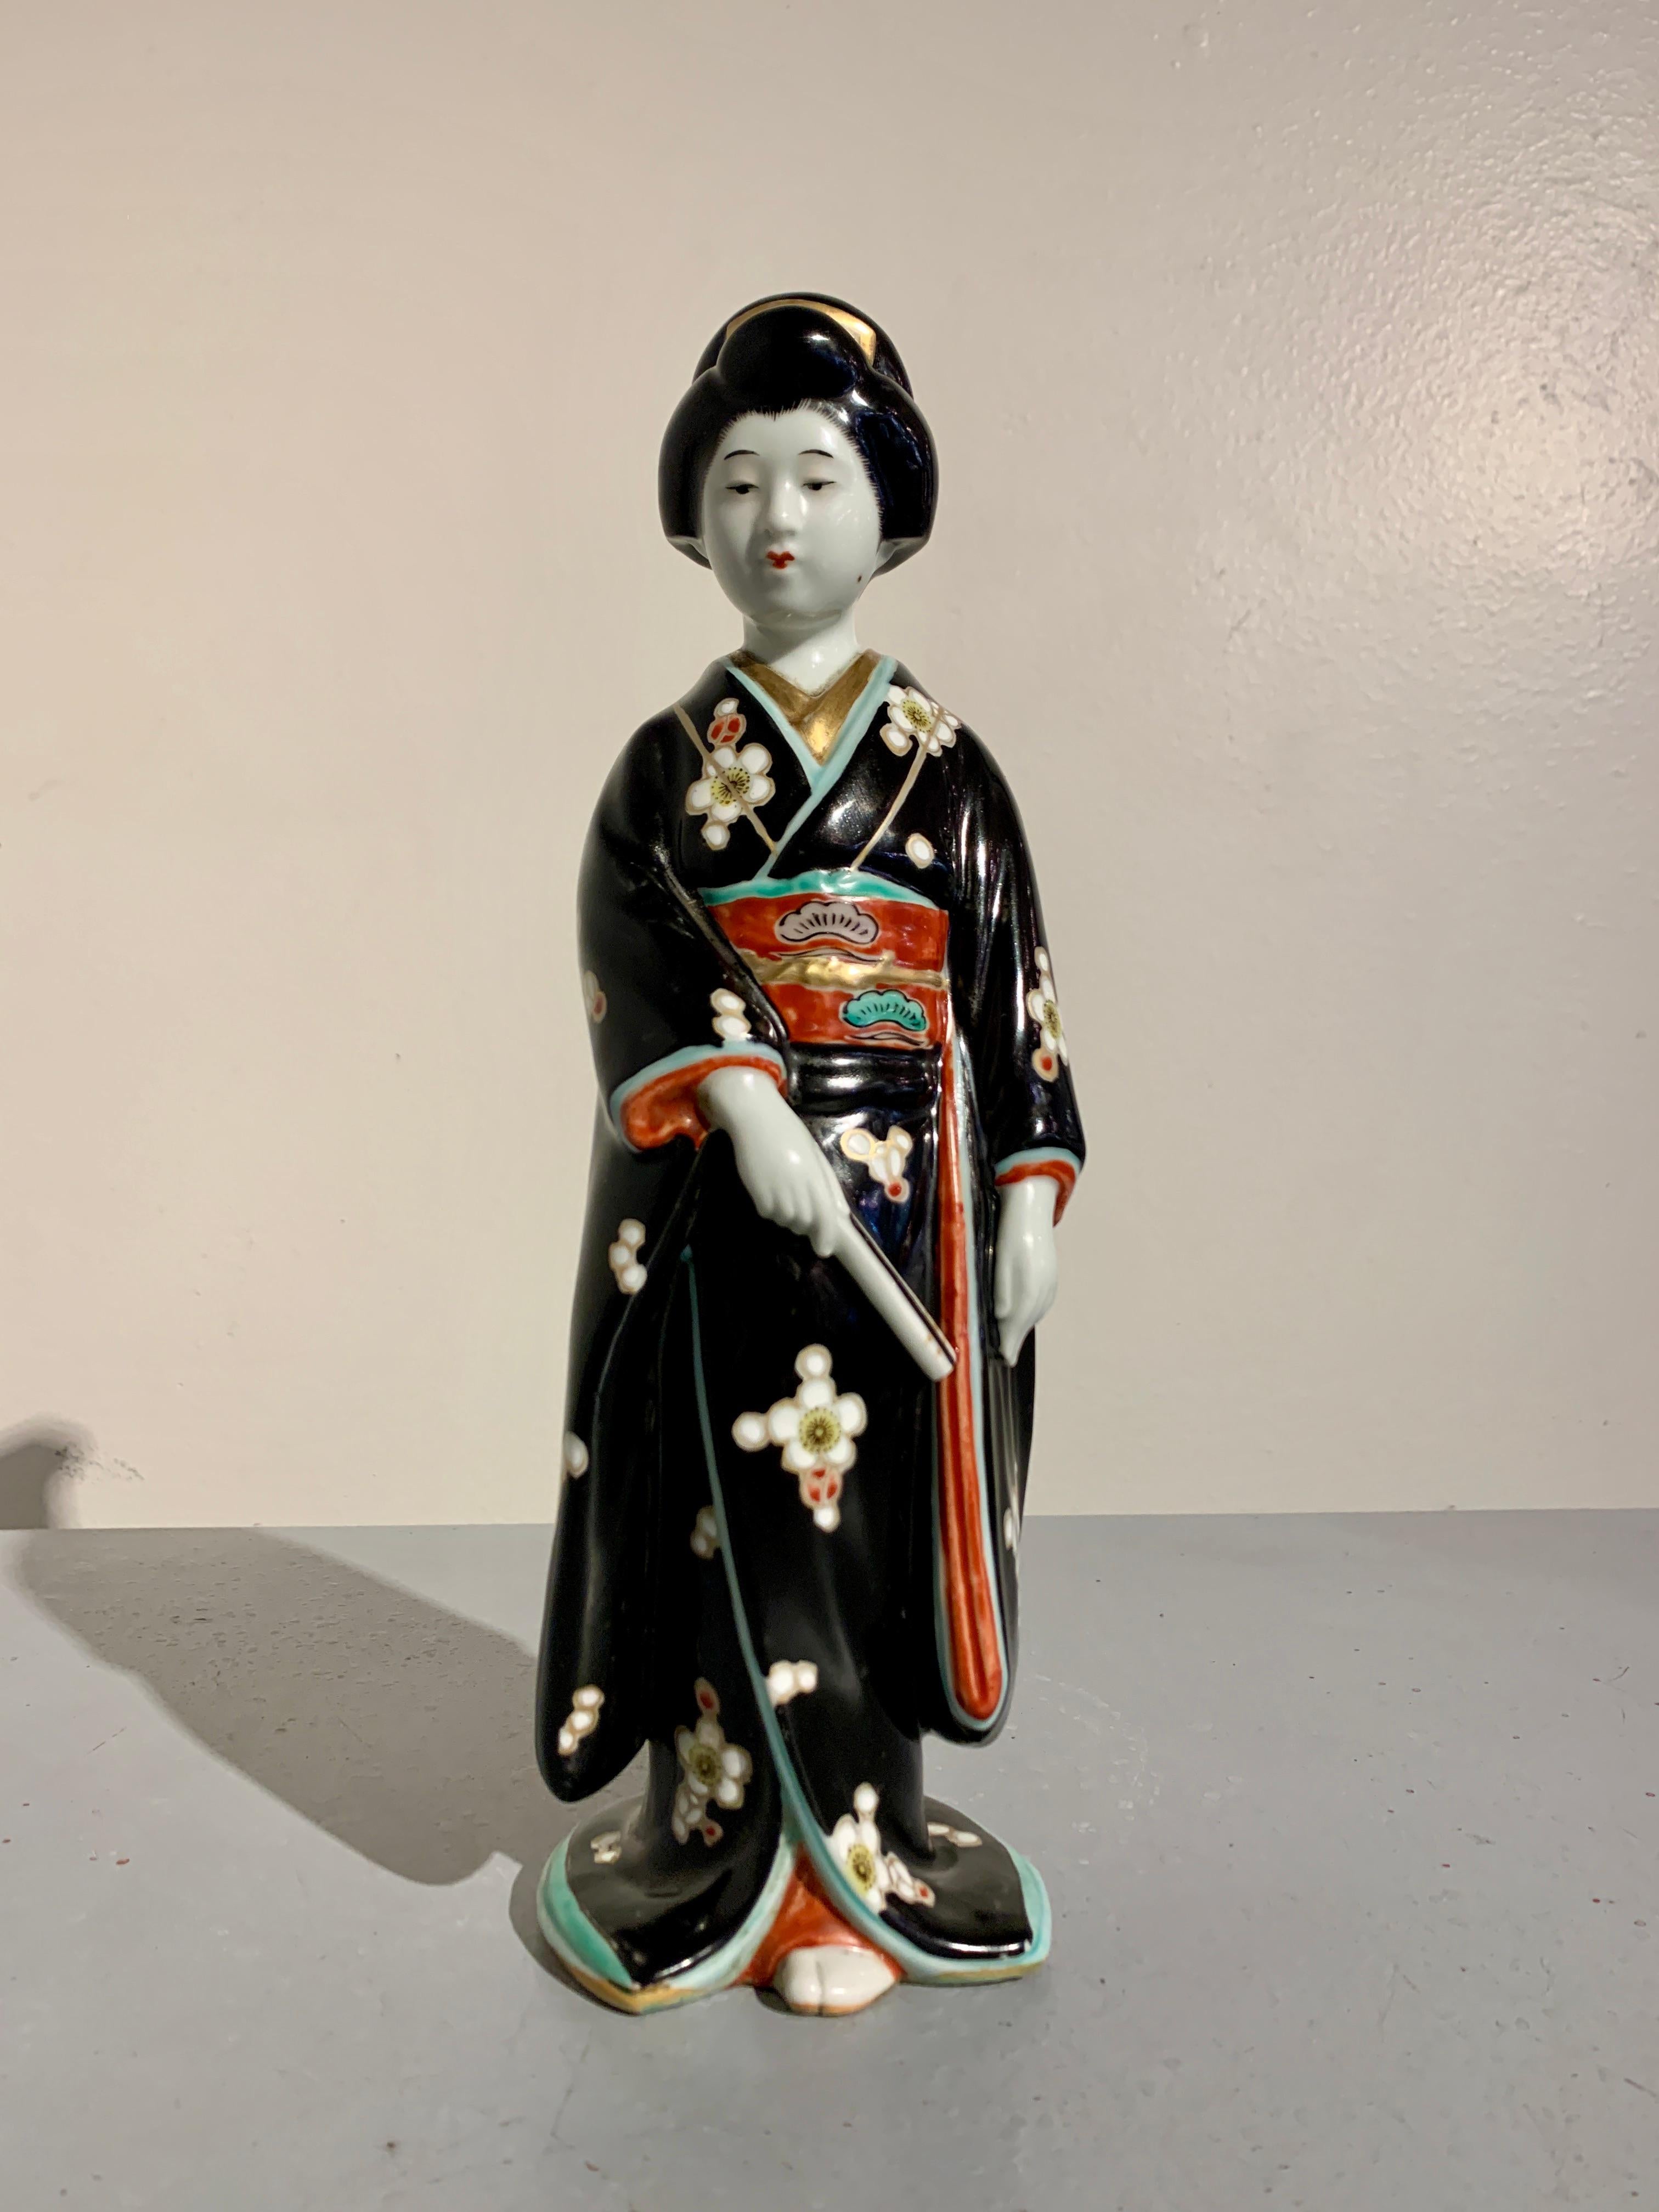 Eine charmante und reizvolle japanische Kutani emaillierte Porzellanfigur einer Bijin oder Geisha, frühe Showa-Ära, ca. 1930er Jahre, Japan.

Die elegante Figur einer schönen Frau, Bijin genannt, die in einen vollen Kimono gekleidet ist und einen